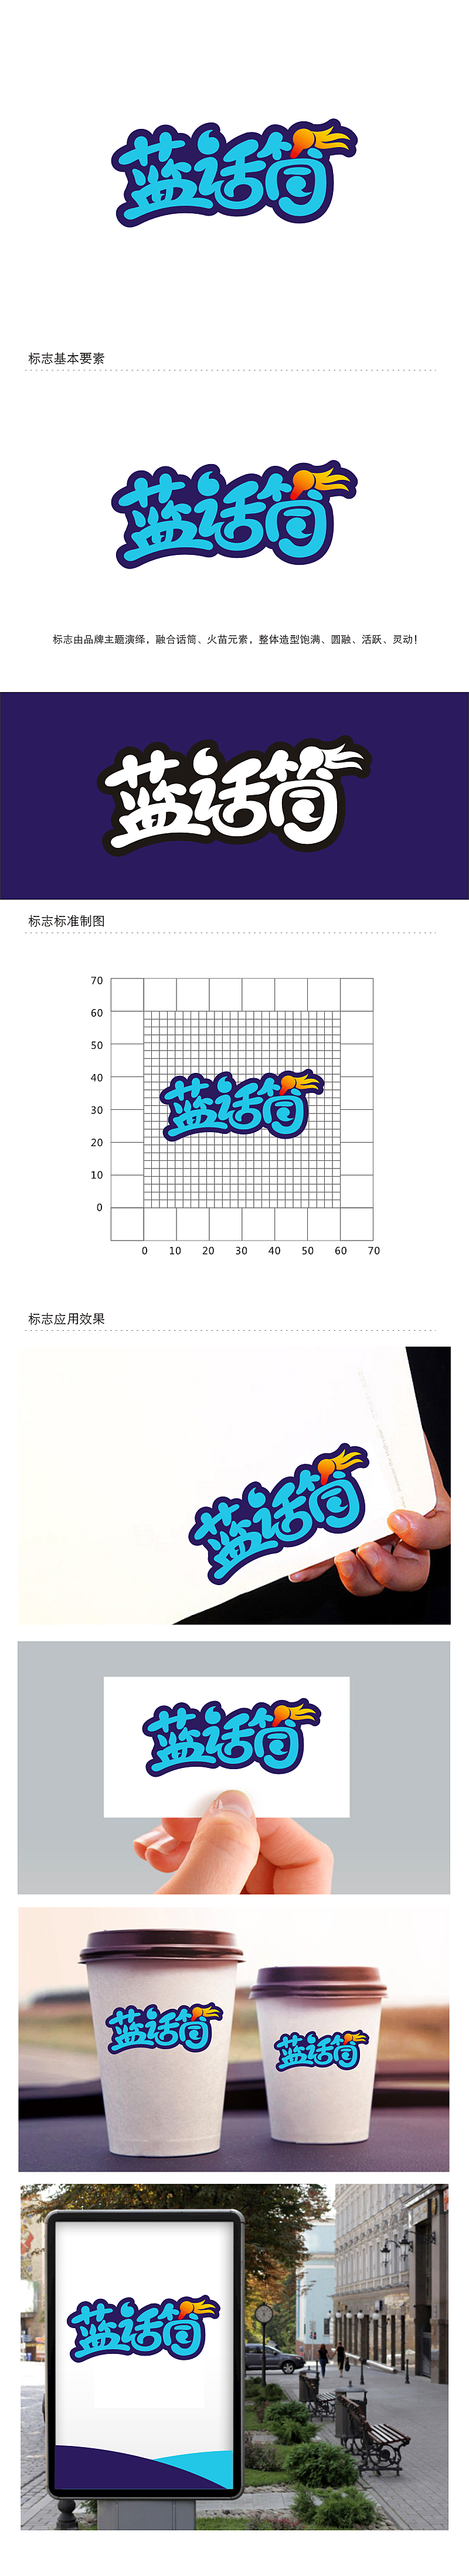 劳志飞的蓝话筒【重新整理设计需求】logo设计